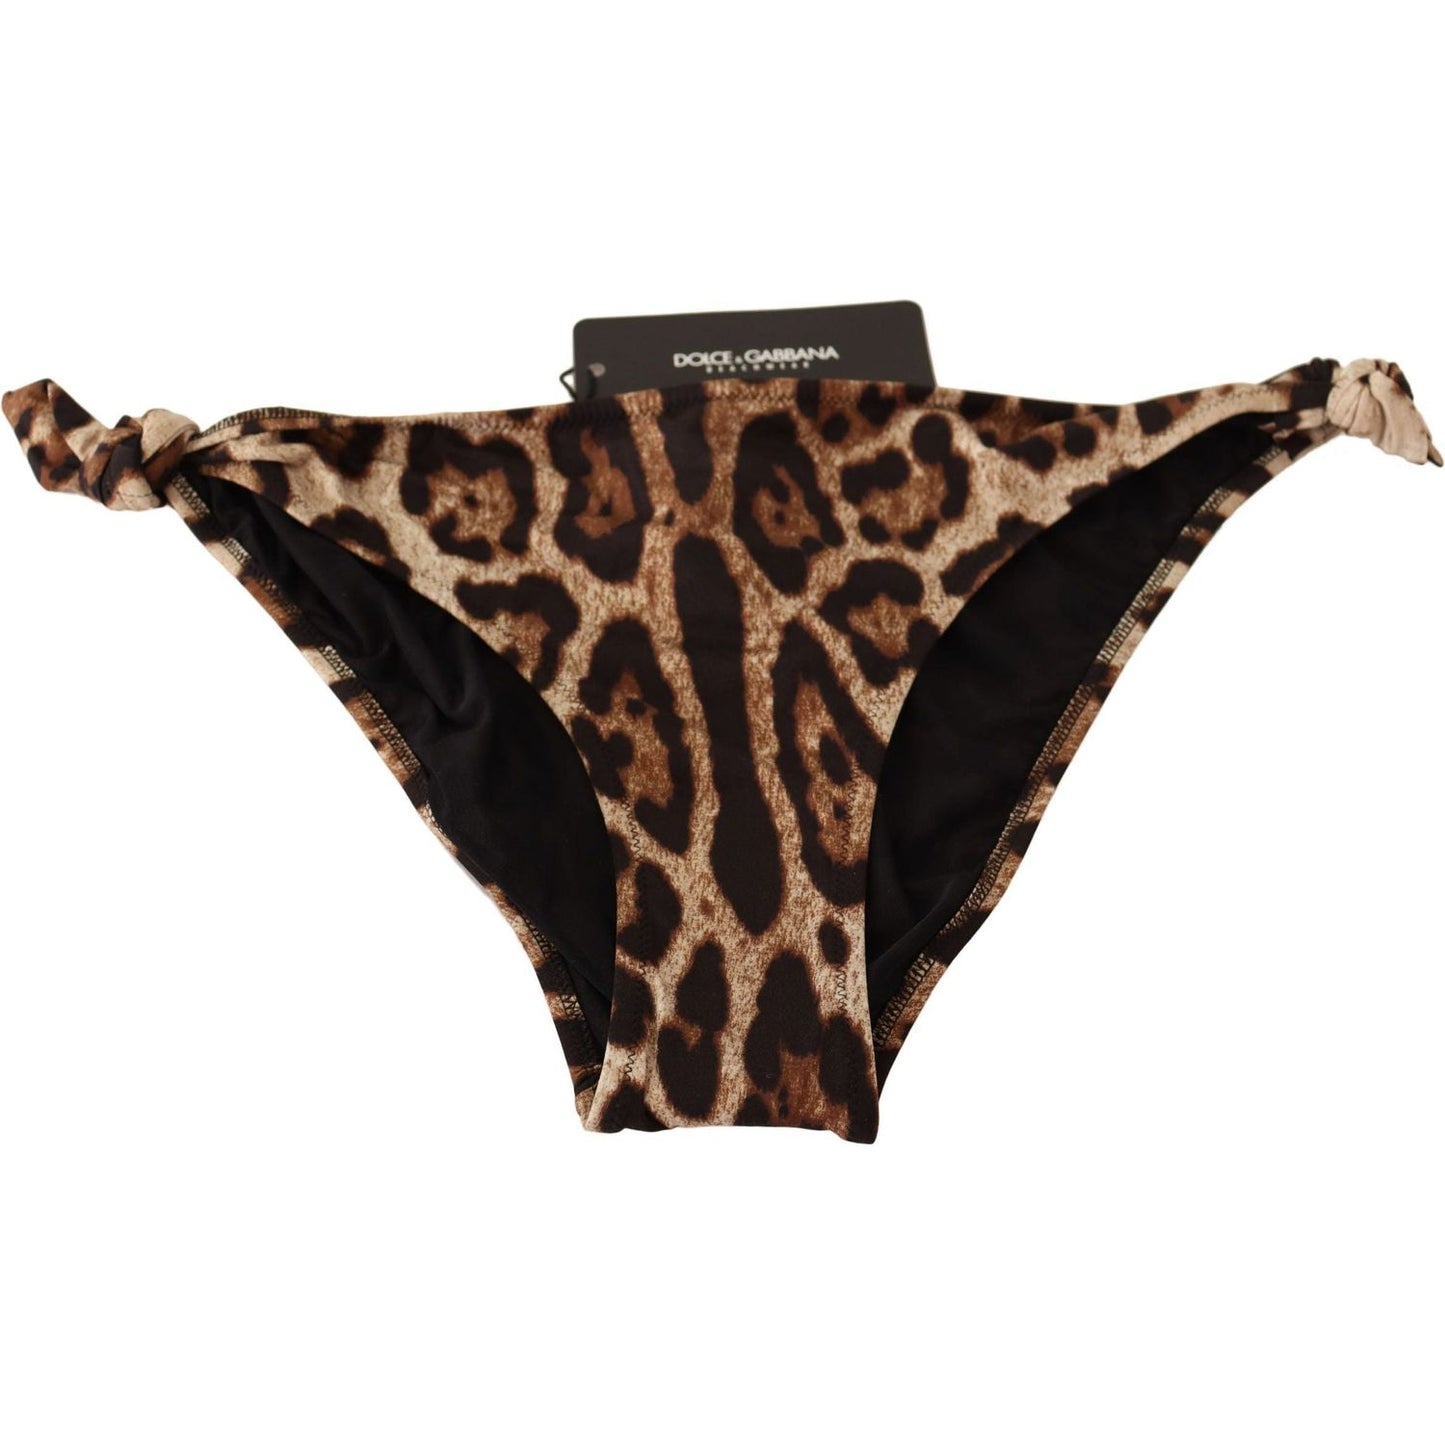 Dolce & Gabbana Bikini Bottom Brown Leopard Print Swimsuit Swimwear bikini-bottom-brown-leopard-print-swimsuit-swimwear WOMAN SWIMWEAR IMG_8330-scaled-834873ef-68c.jpg